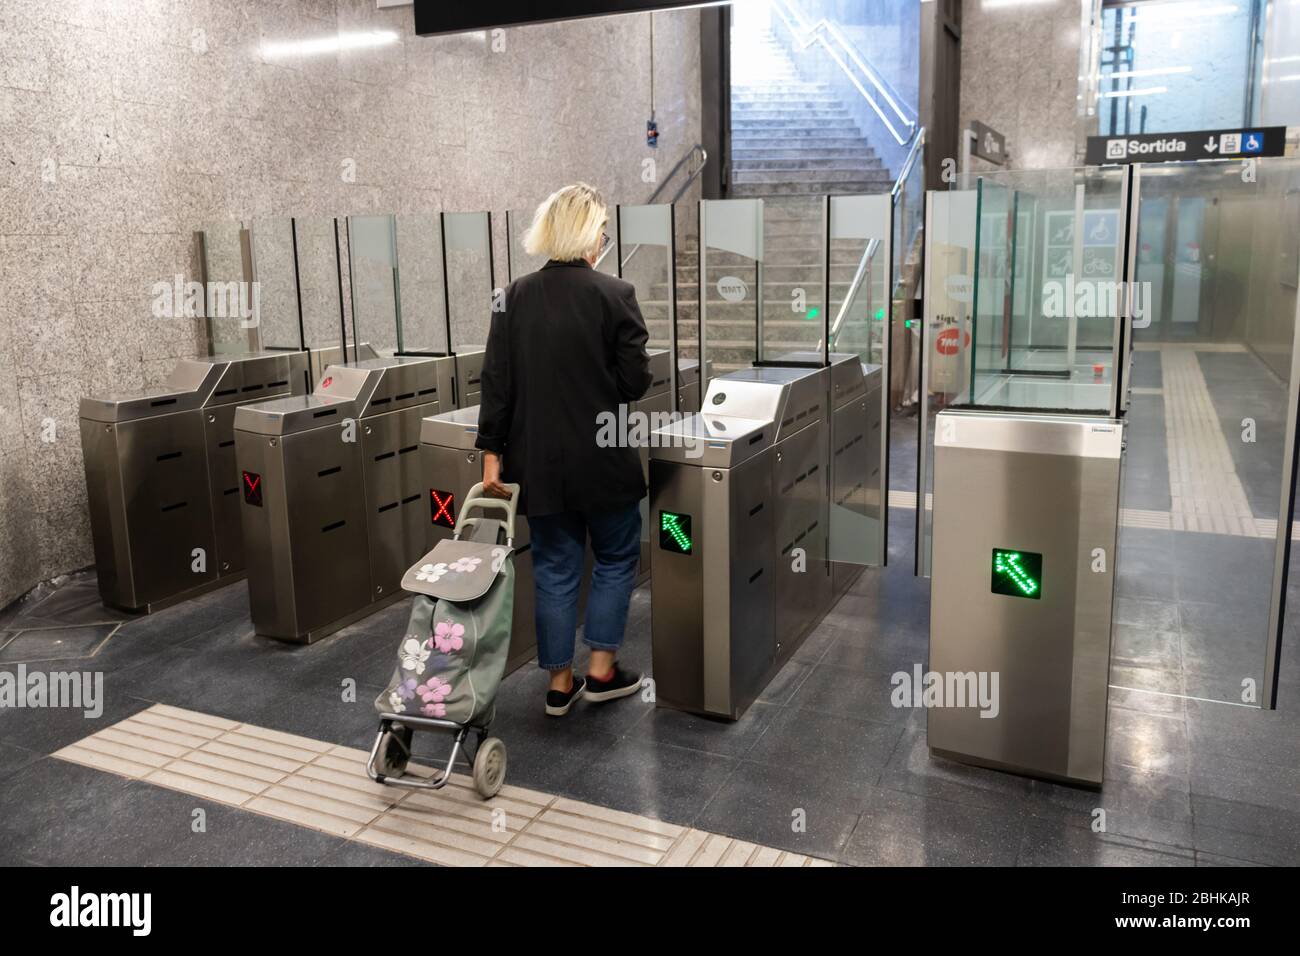 Barcelone, Espagne. 26 avril 2020. Passager quittant une station de métro vide à Barcelone pendant le verrouillage du coronavirus Banque D'Images